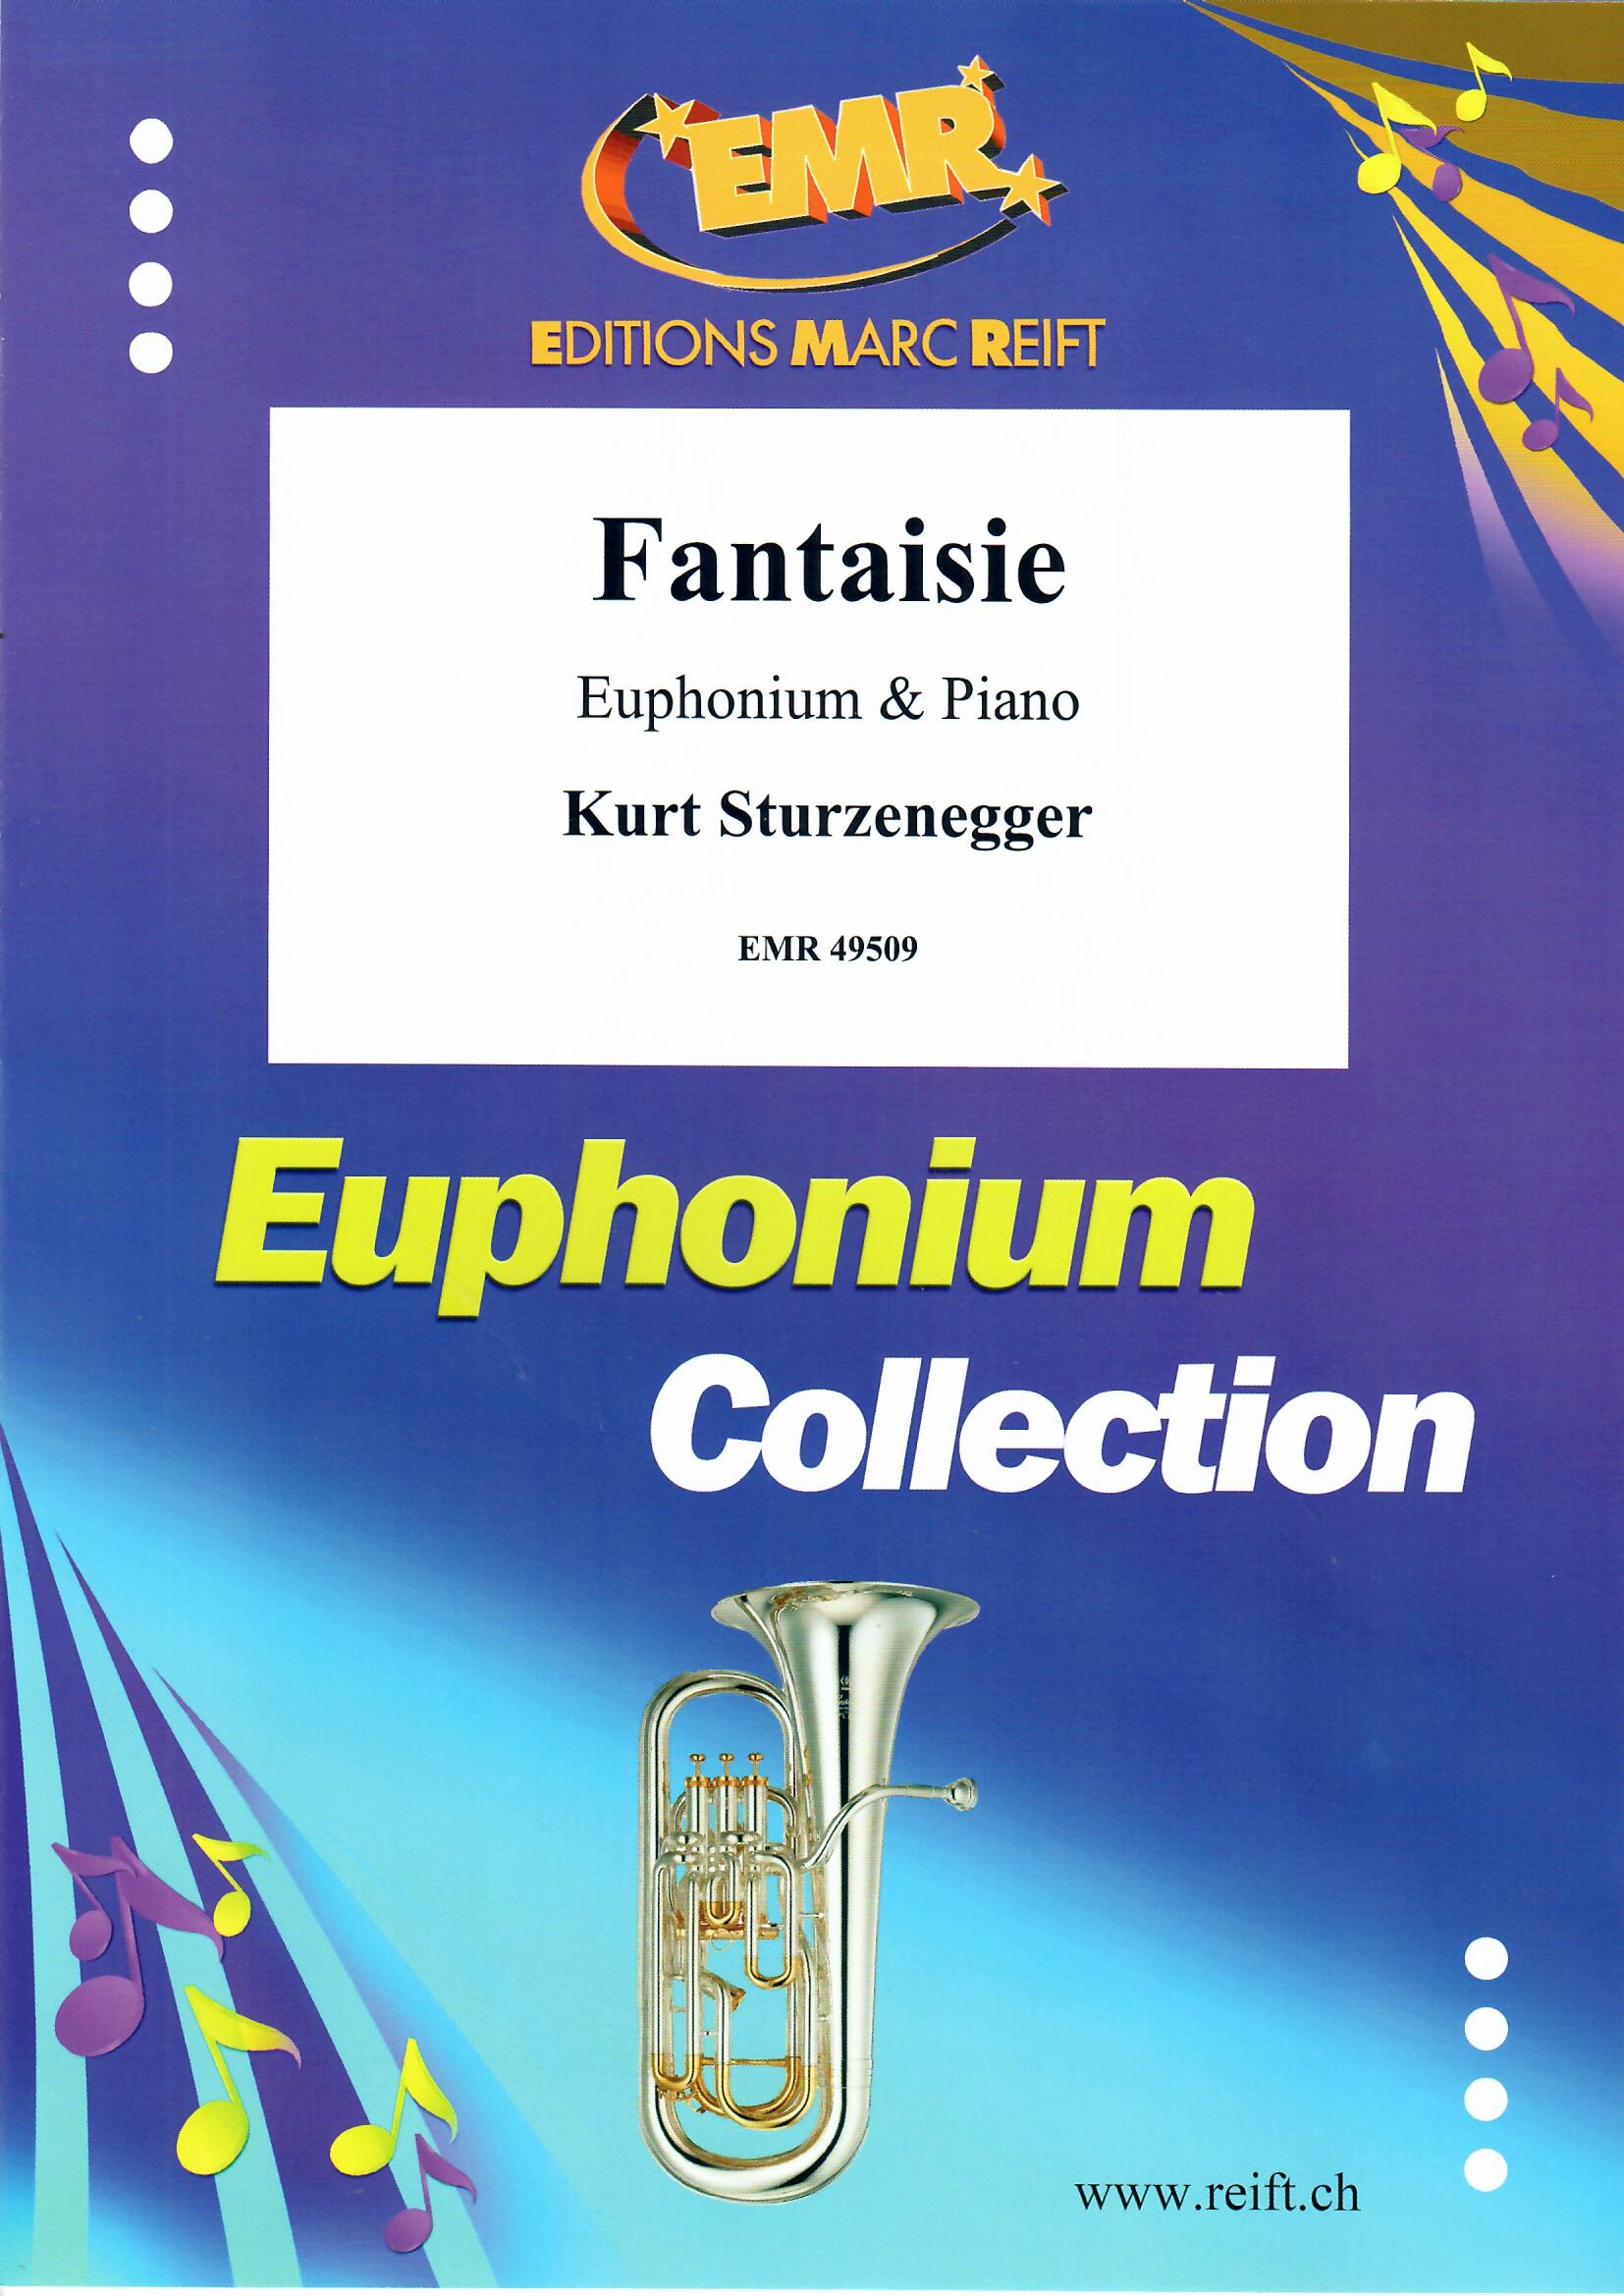 FANTAISIE - Euphonium & Piano, SOLOS - Euphonium